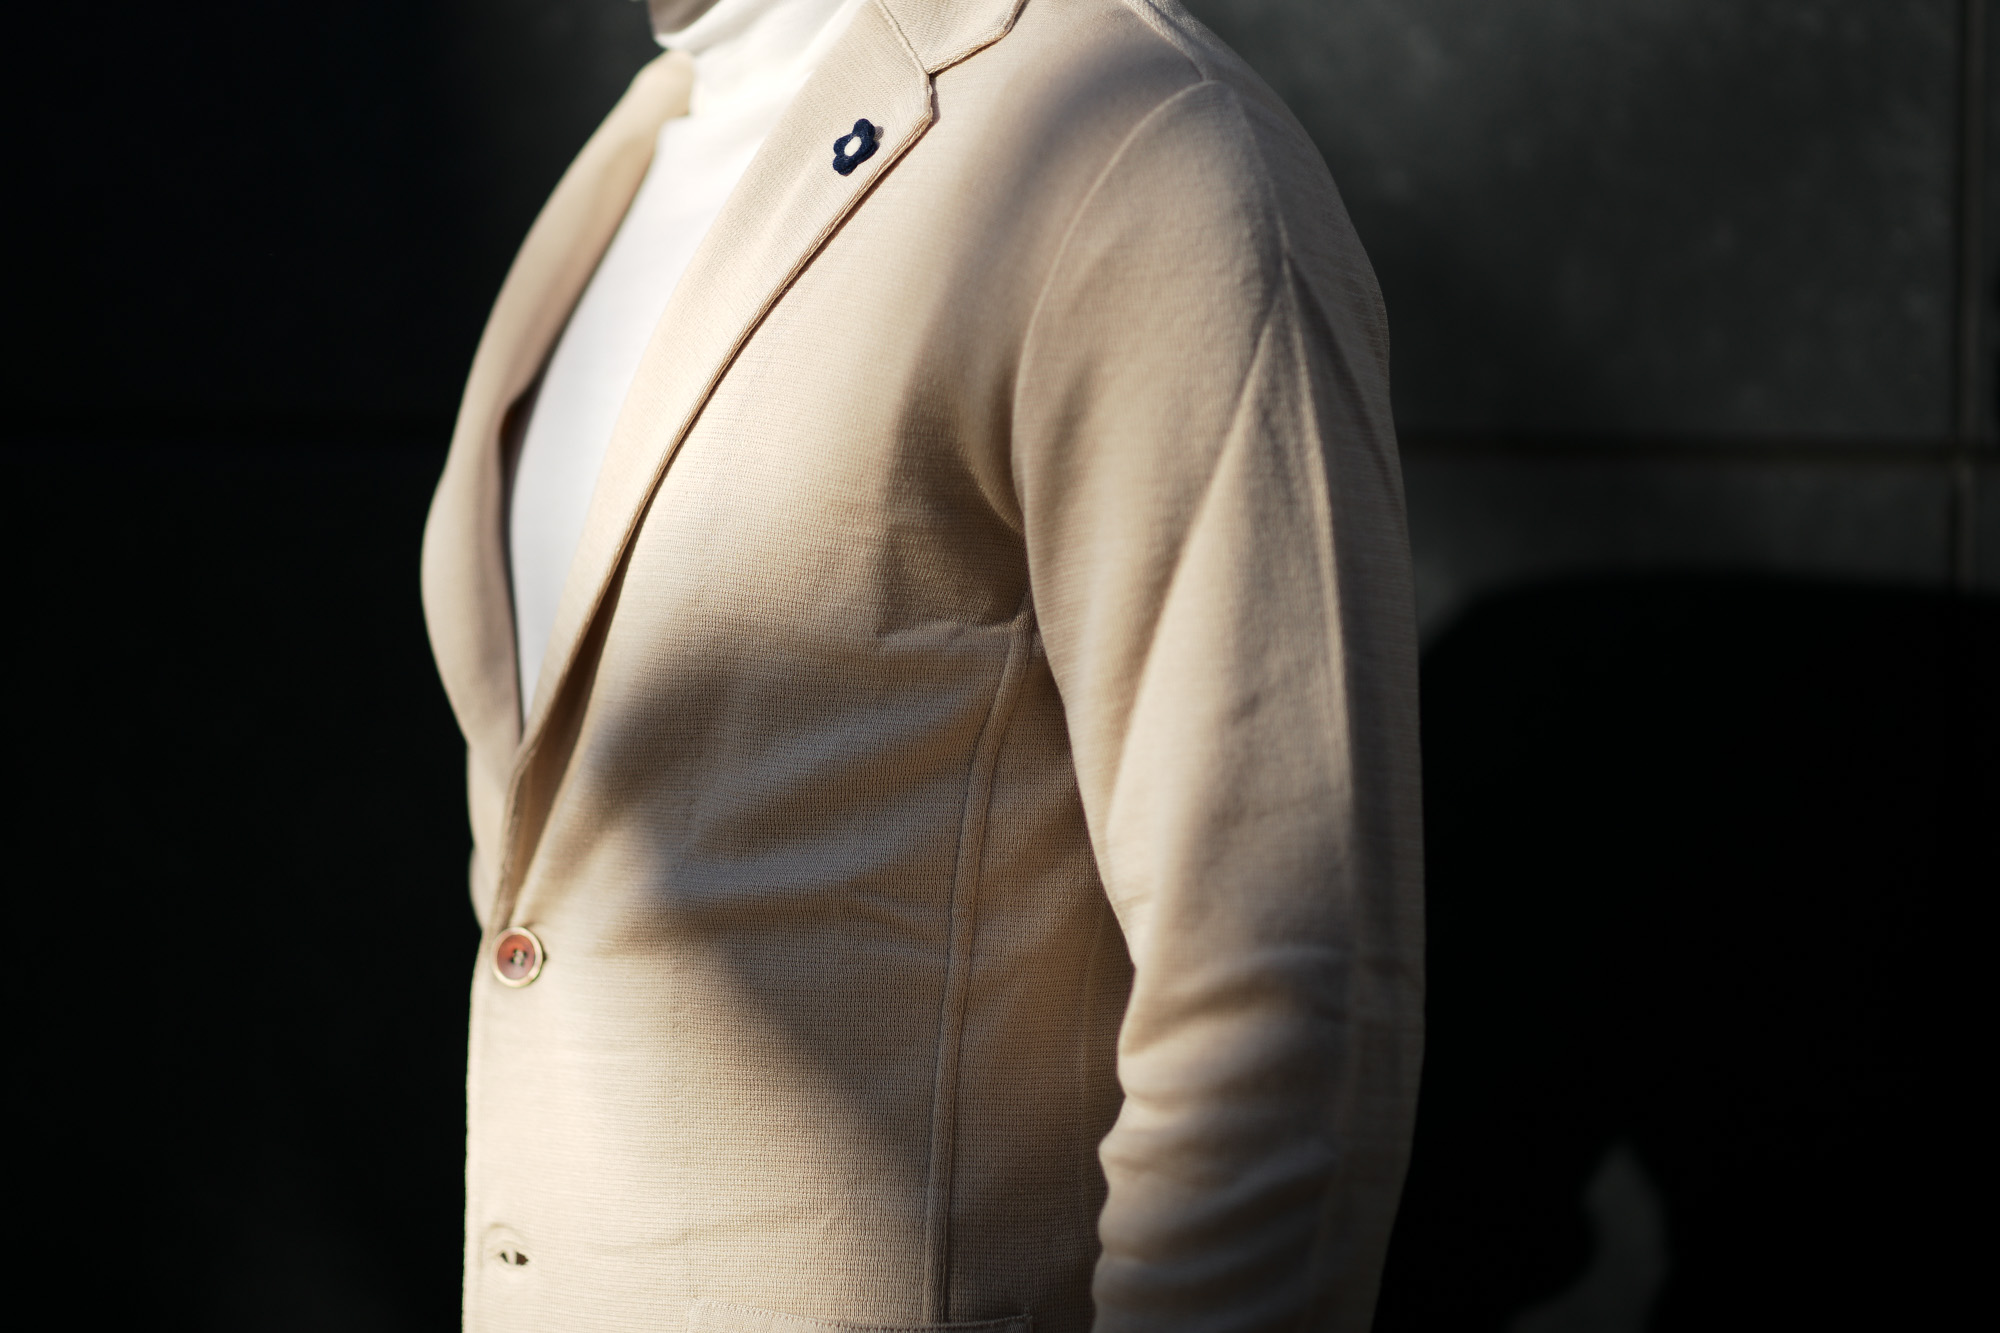 LARDINI (ラルディーニ) Milano Rib Knit Jacket (ミラノリブ ニット ジャケット) コットン ミラノリブ 2B ニットジャケット BEIGE(ベージュ・200) Made in italy (イタリア製) 2019 春夏新作 愛知 名古屋 alto e diritto アルトエデリット スーツ